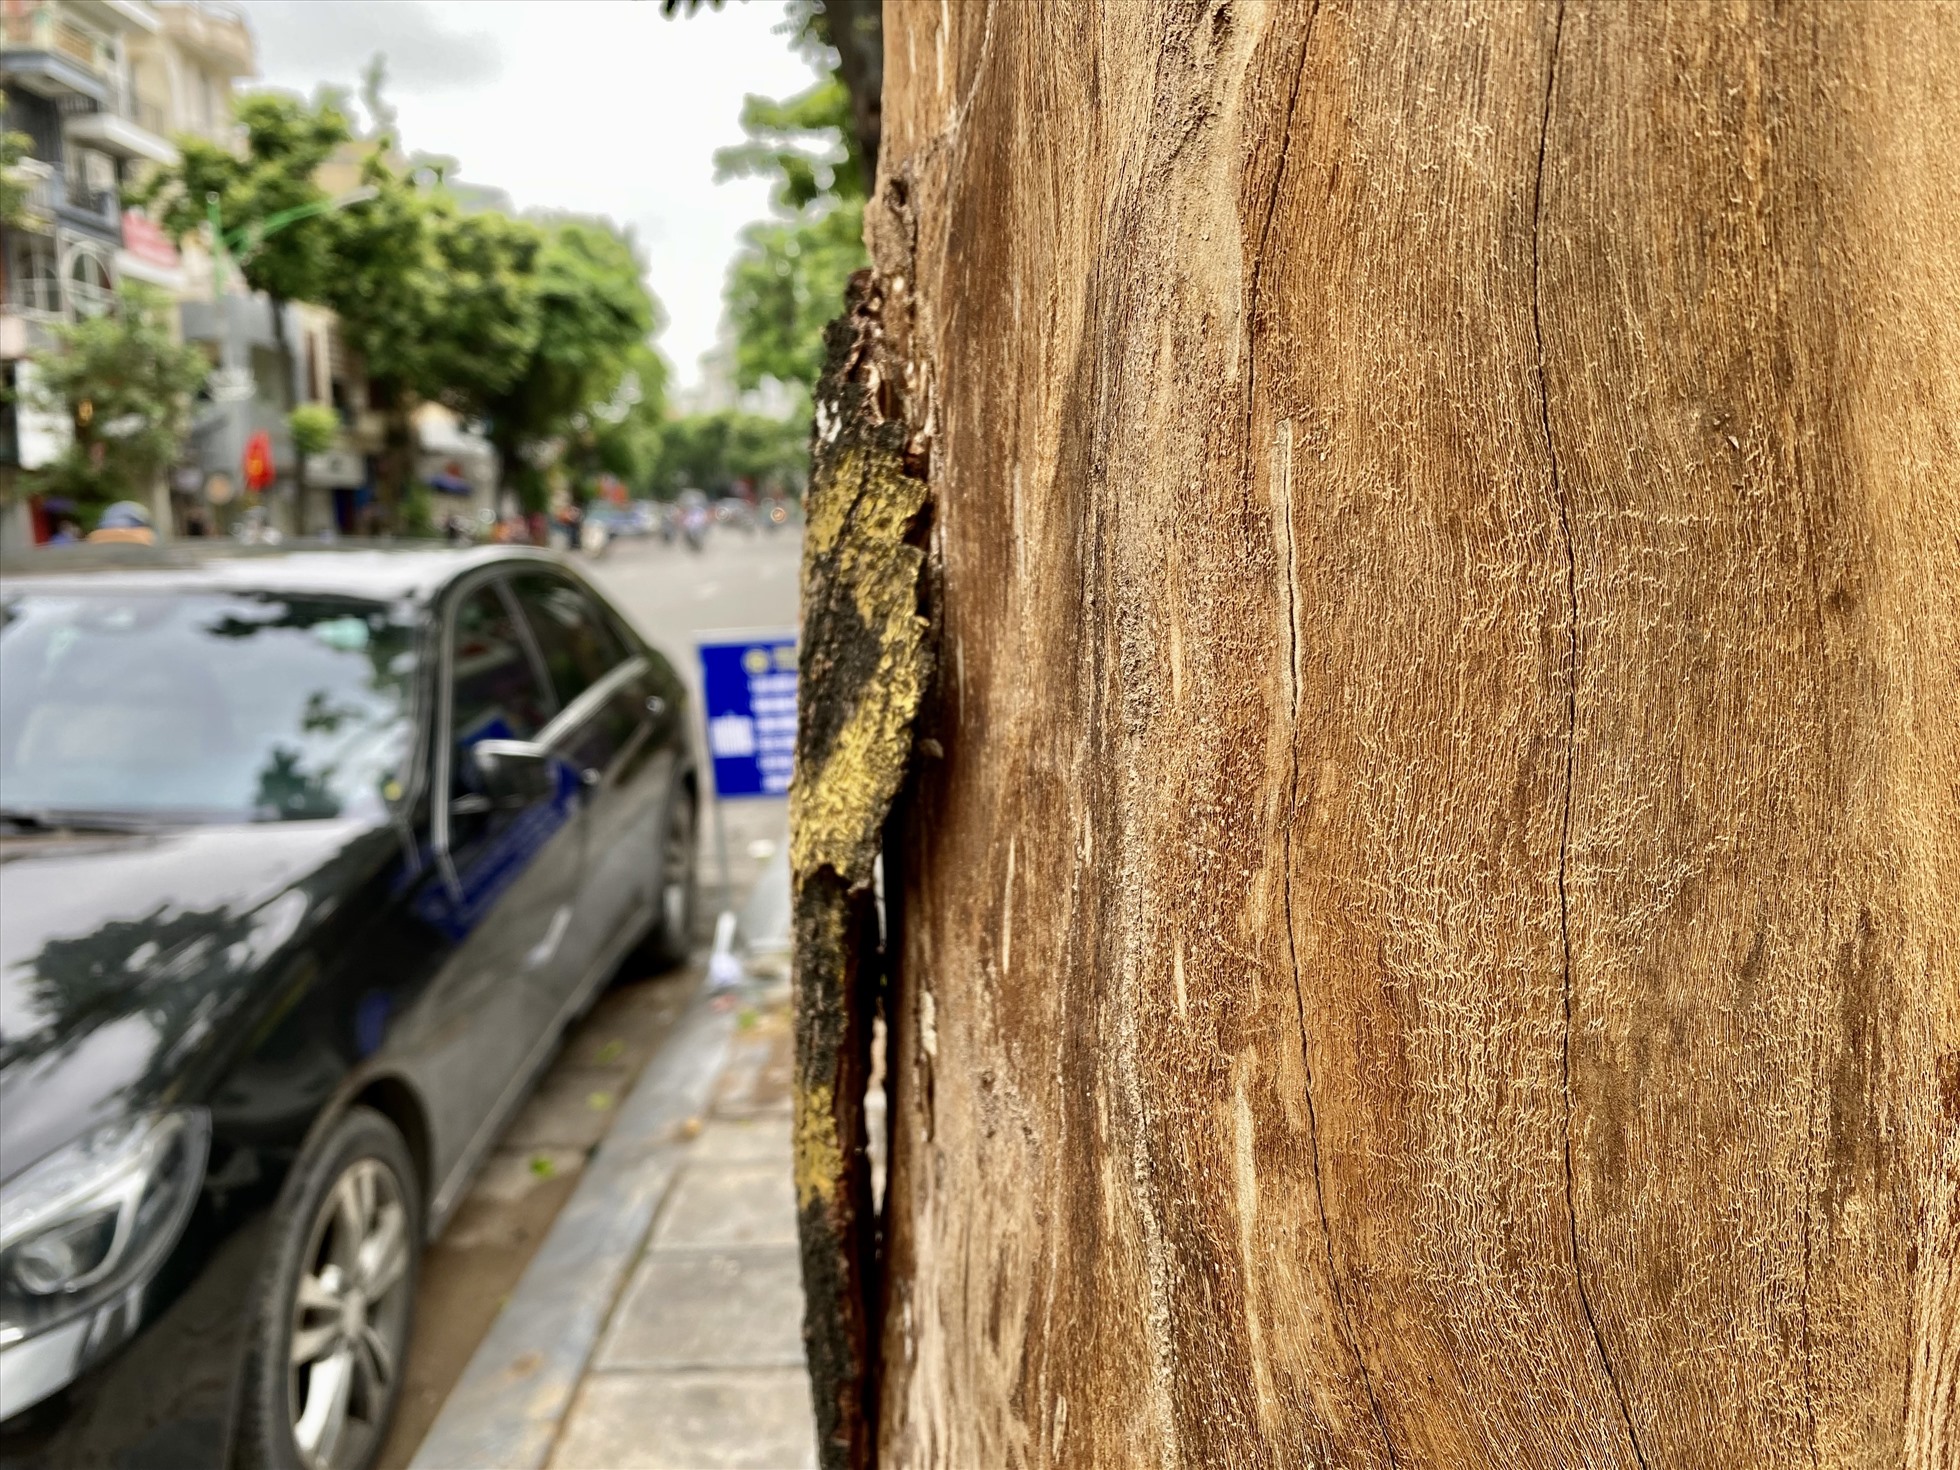 Vỏ cây tách ra khỏi thân cây trên phố Huế. Ảnh: Vĩnh Hoàng